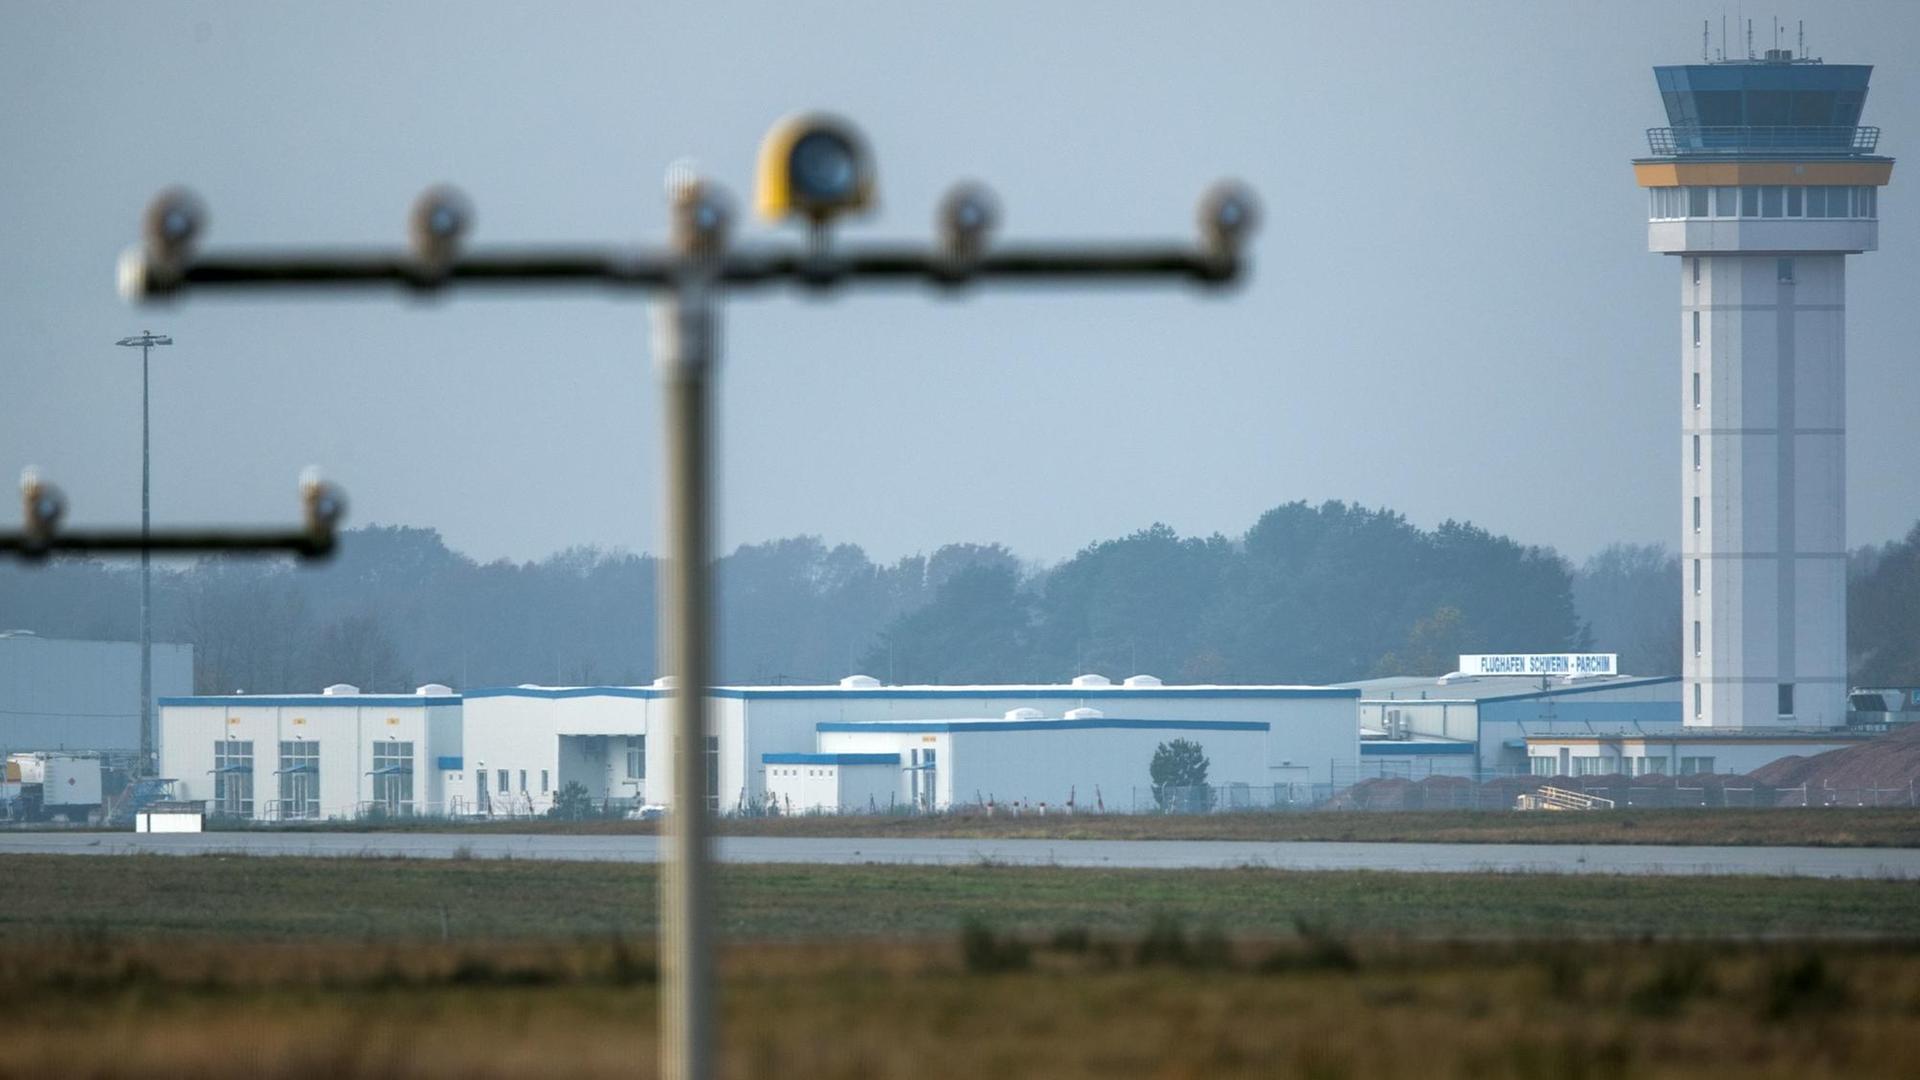 Der neue Tower sowie das Abfertigungsgebäude des Airports in Parchim (Mecklenburg-Vorpommern) sind hinter der Landebahn zu sehen.